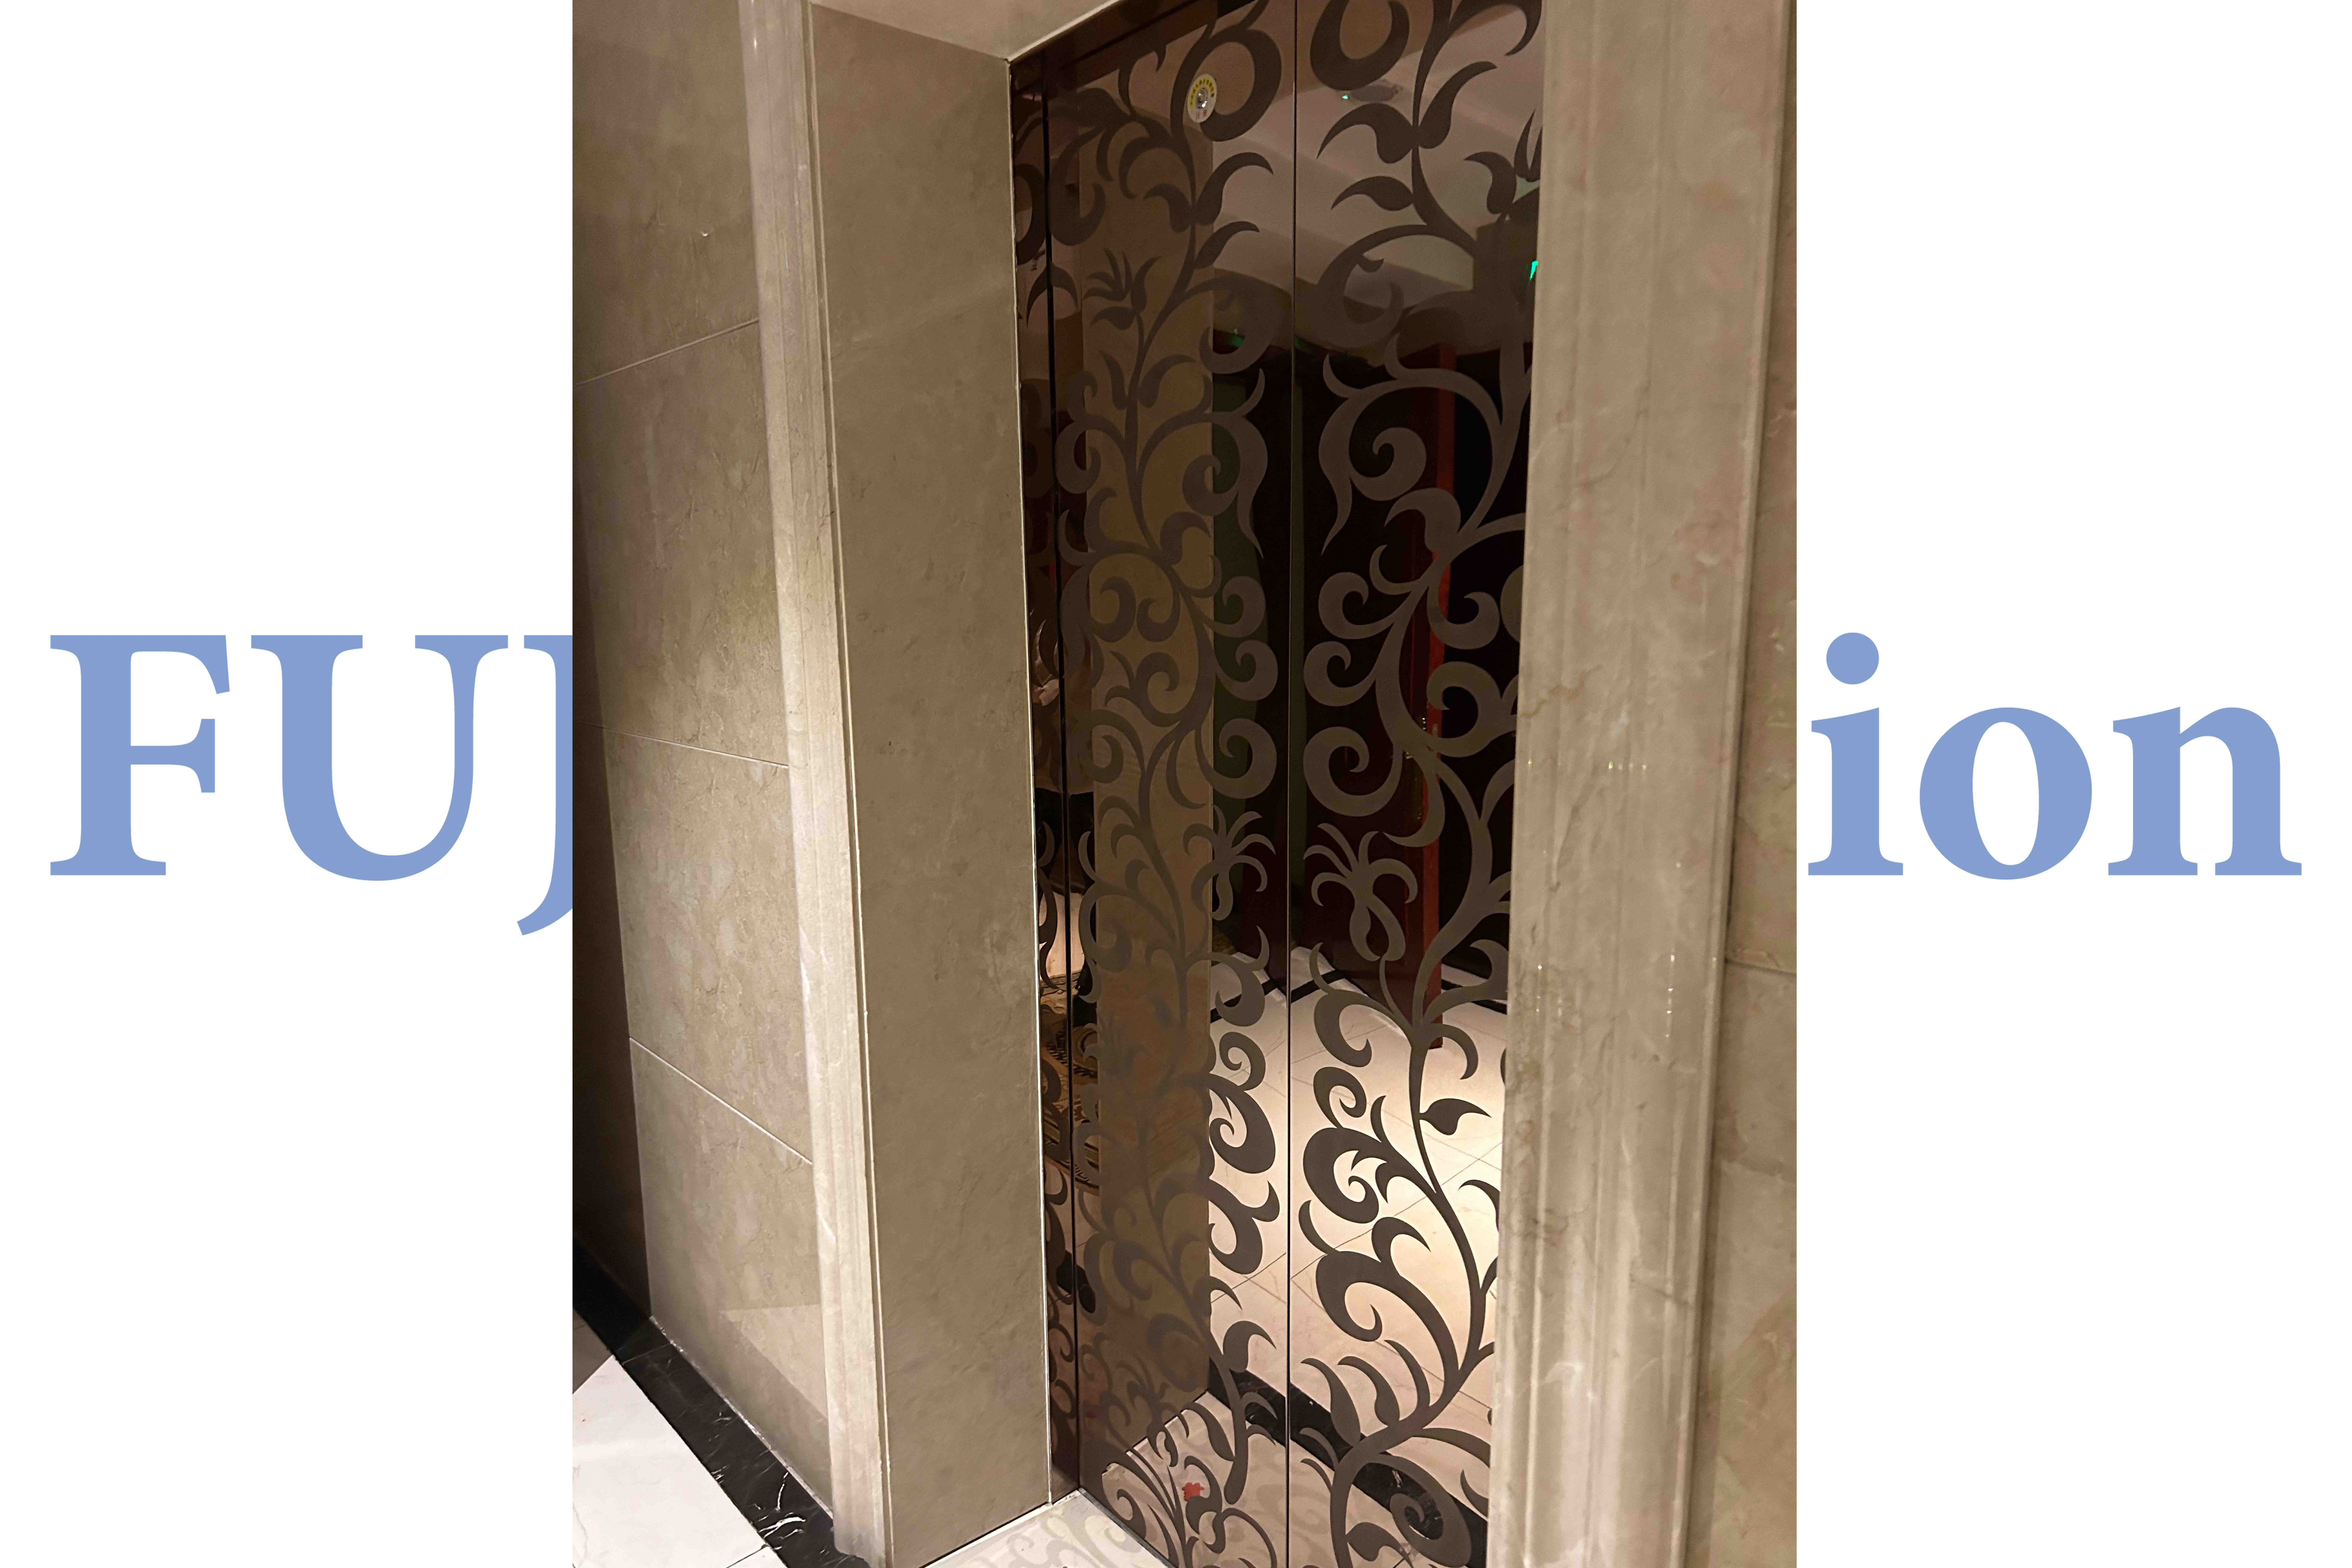 FUJI Precision Elevator-- Champagne Gold Etching Elevator